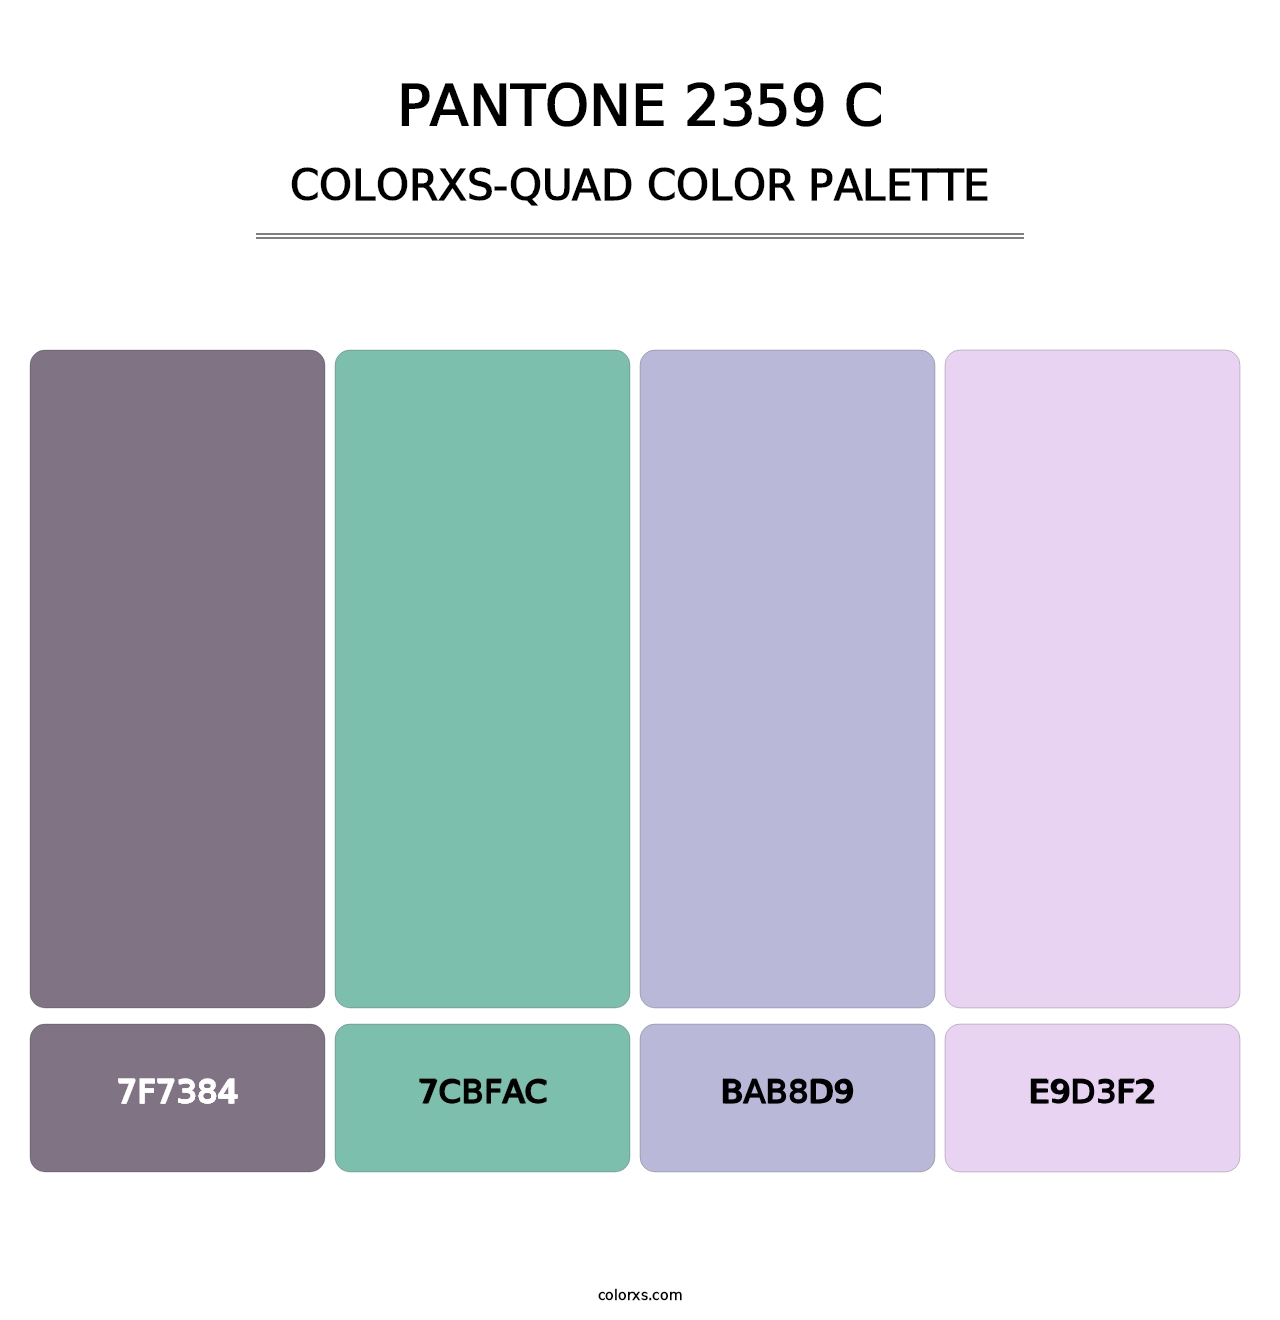 PANTONE 2359 C - Colorxs Quad Palette